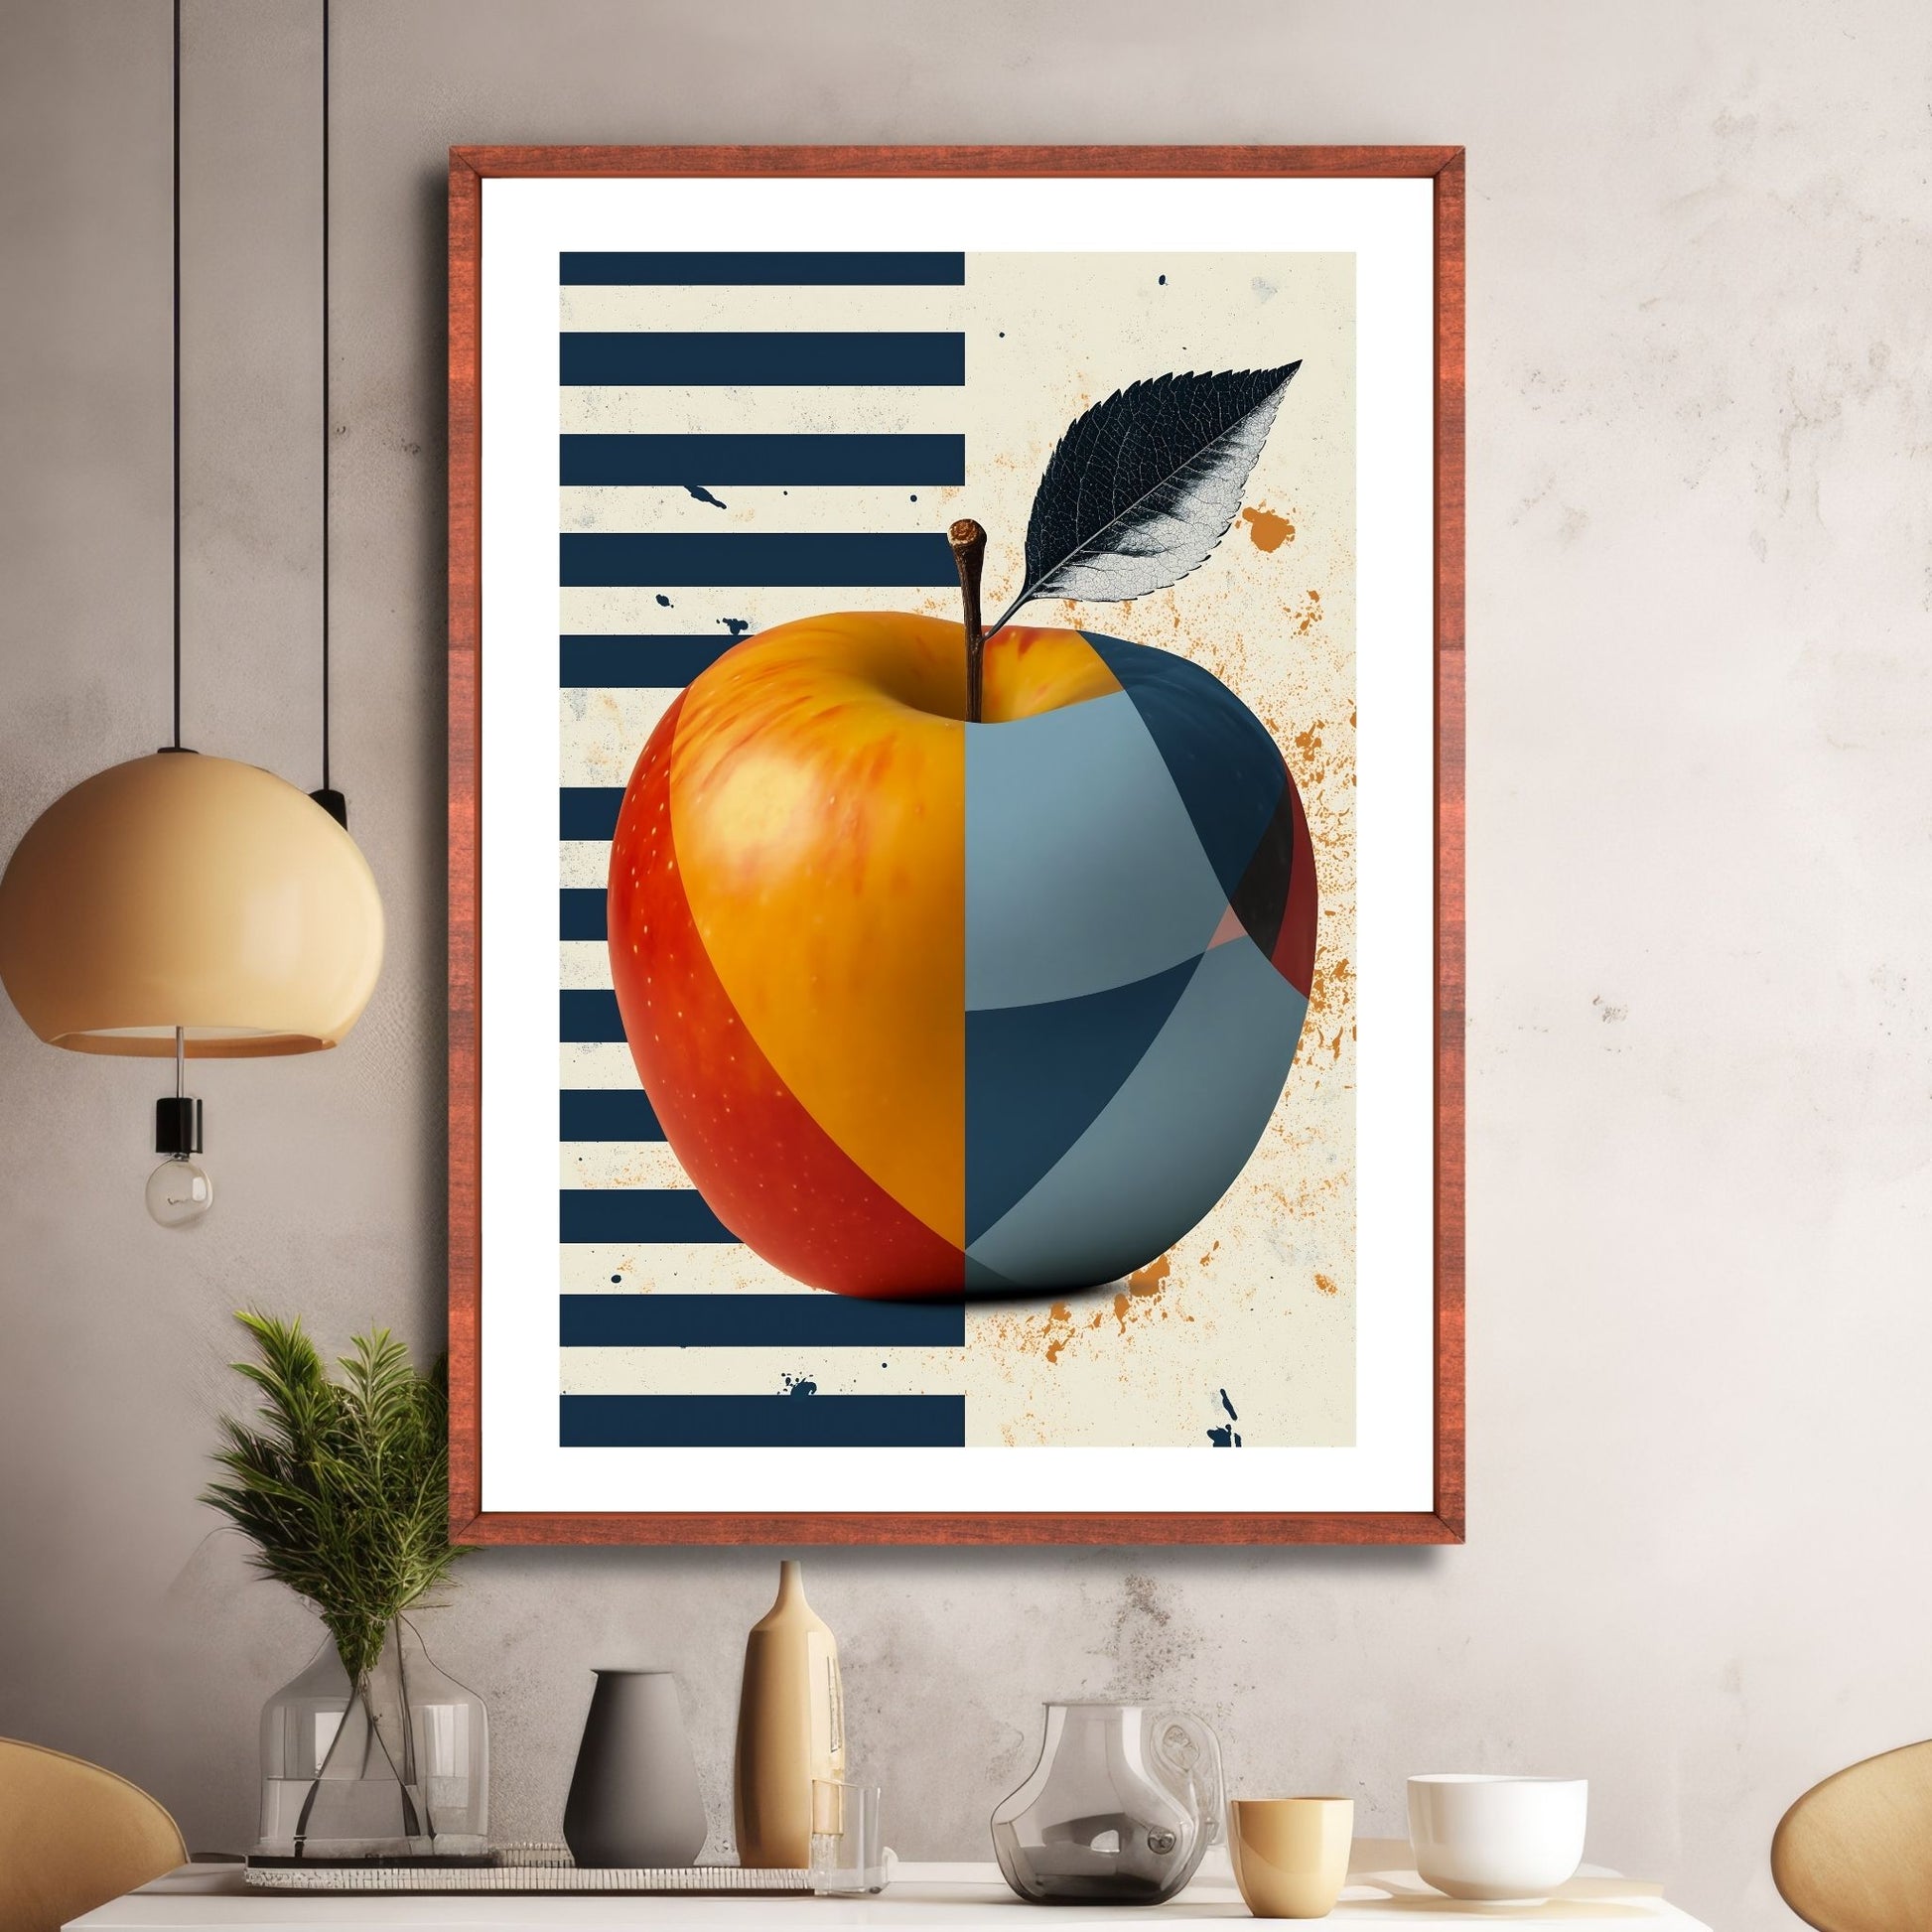 Illustrasjonen av et eple, dekorert med abstrakte former i livlige røde, gule og blåfarger. Bakgrunnen, delt i to med en halvdel i blå striper, og den andre halvdelen i beige. Illustrasjonen viser motivet i eikeramme.